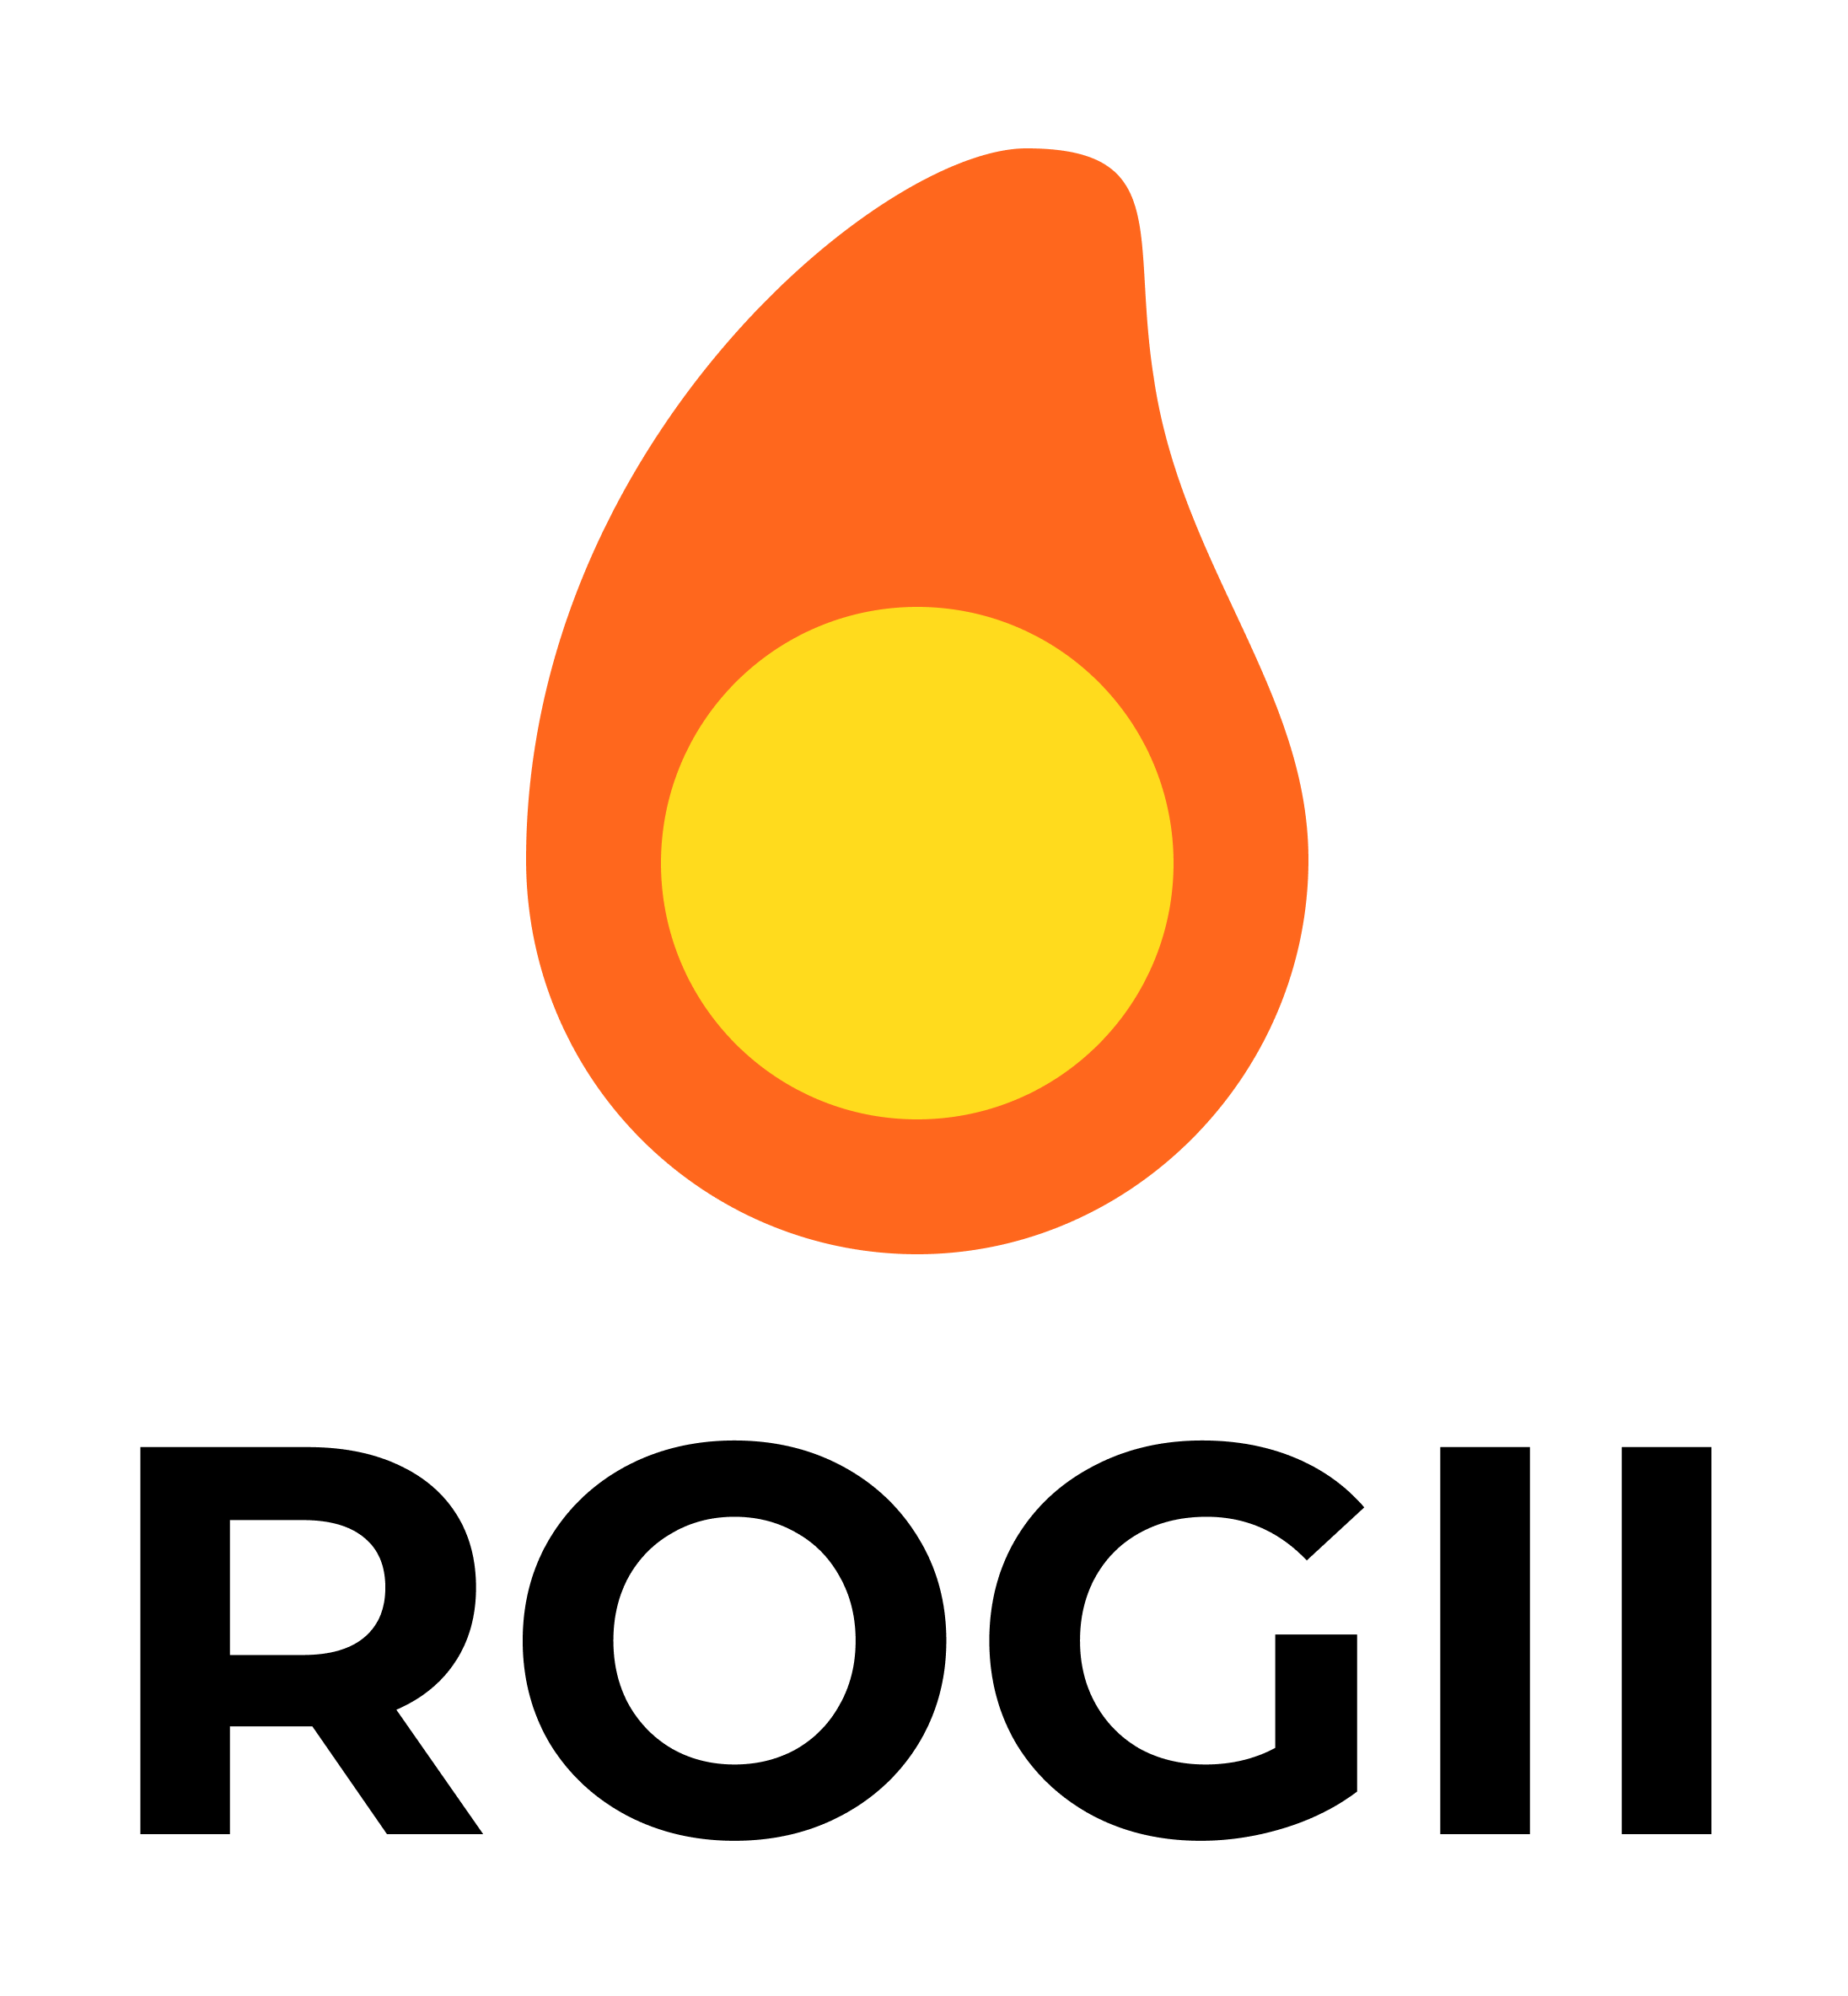 ROGII logo, confirmed until 2025-02-25